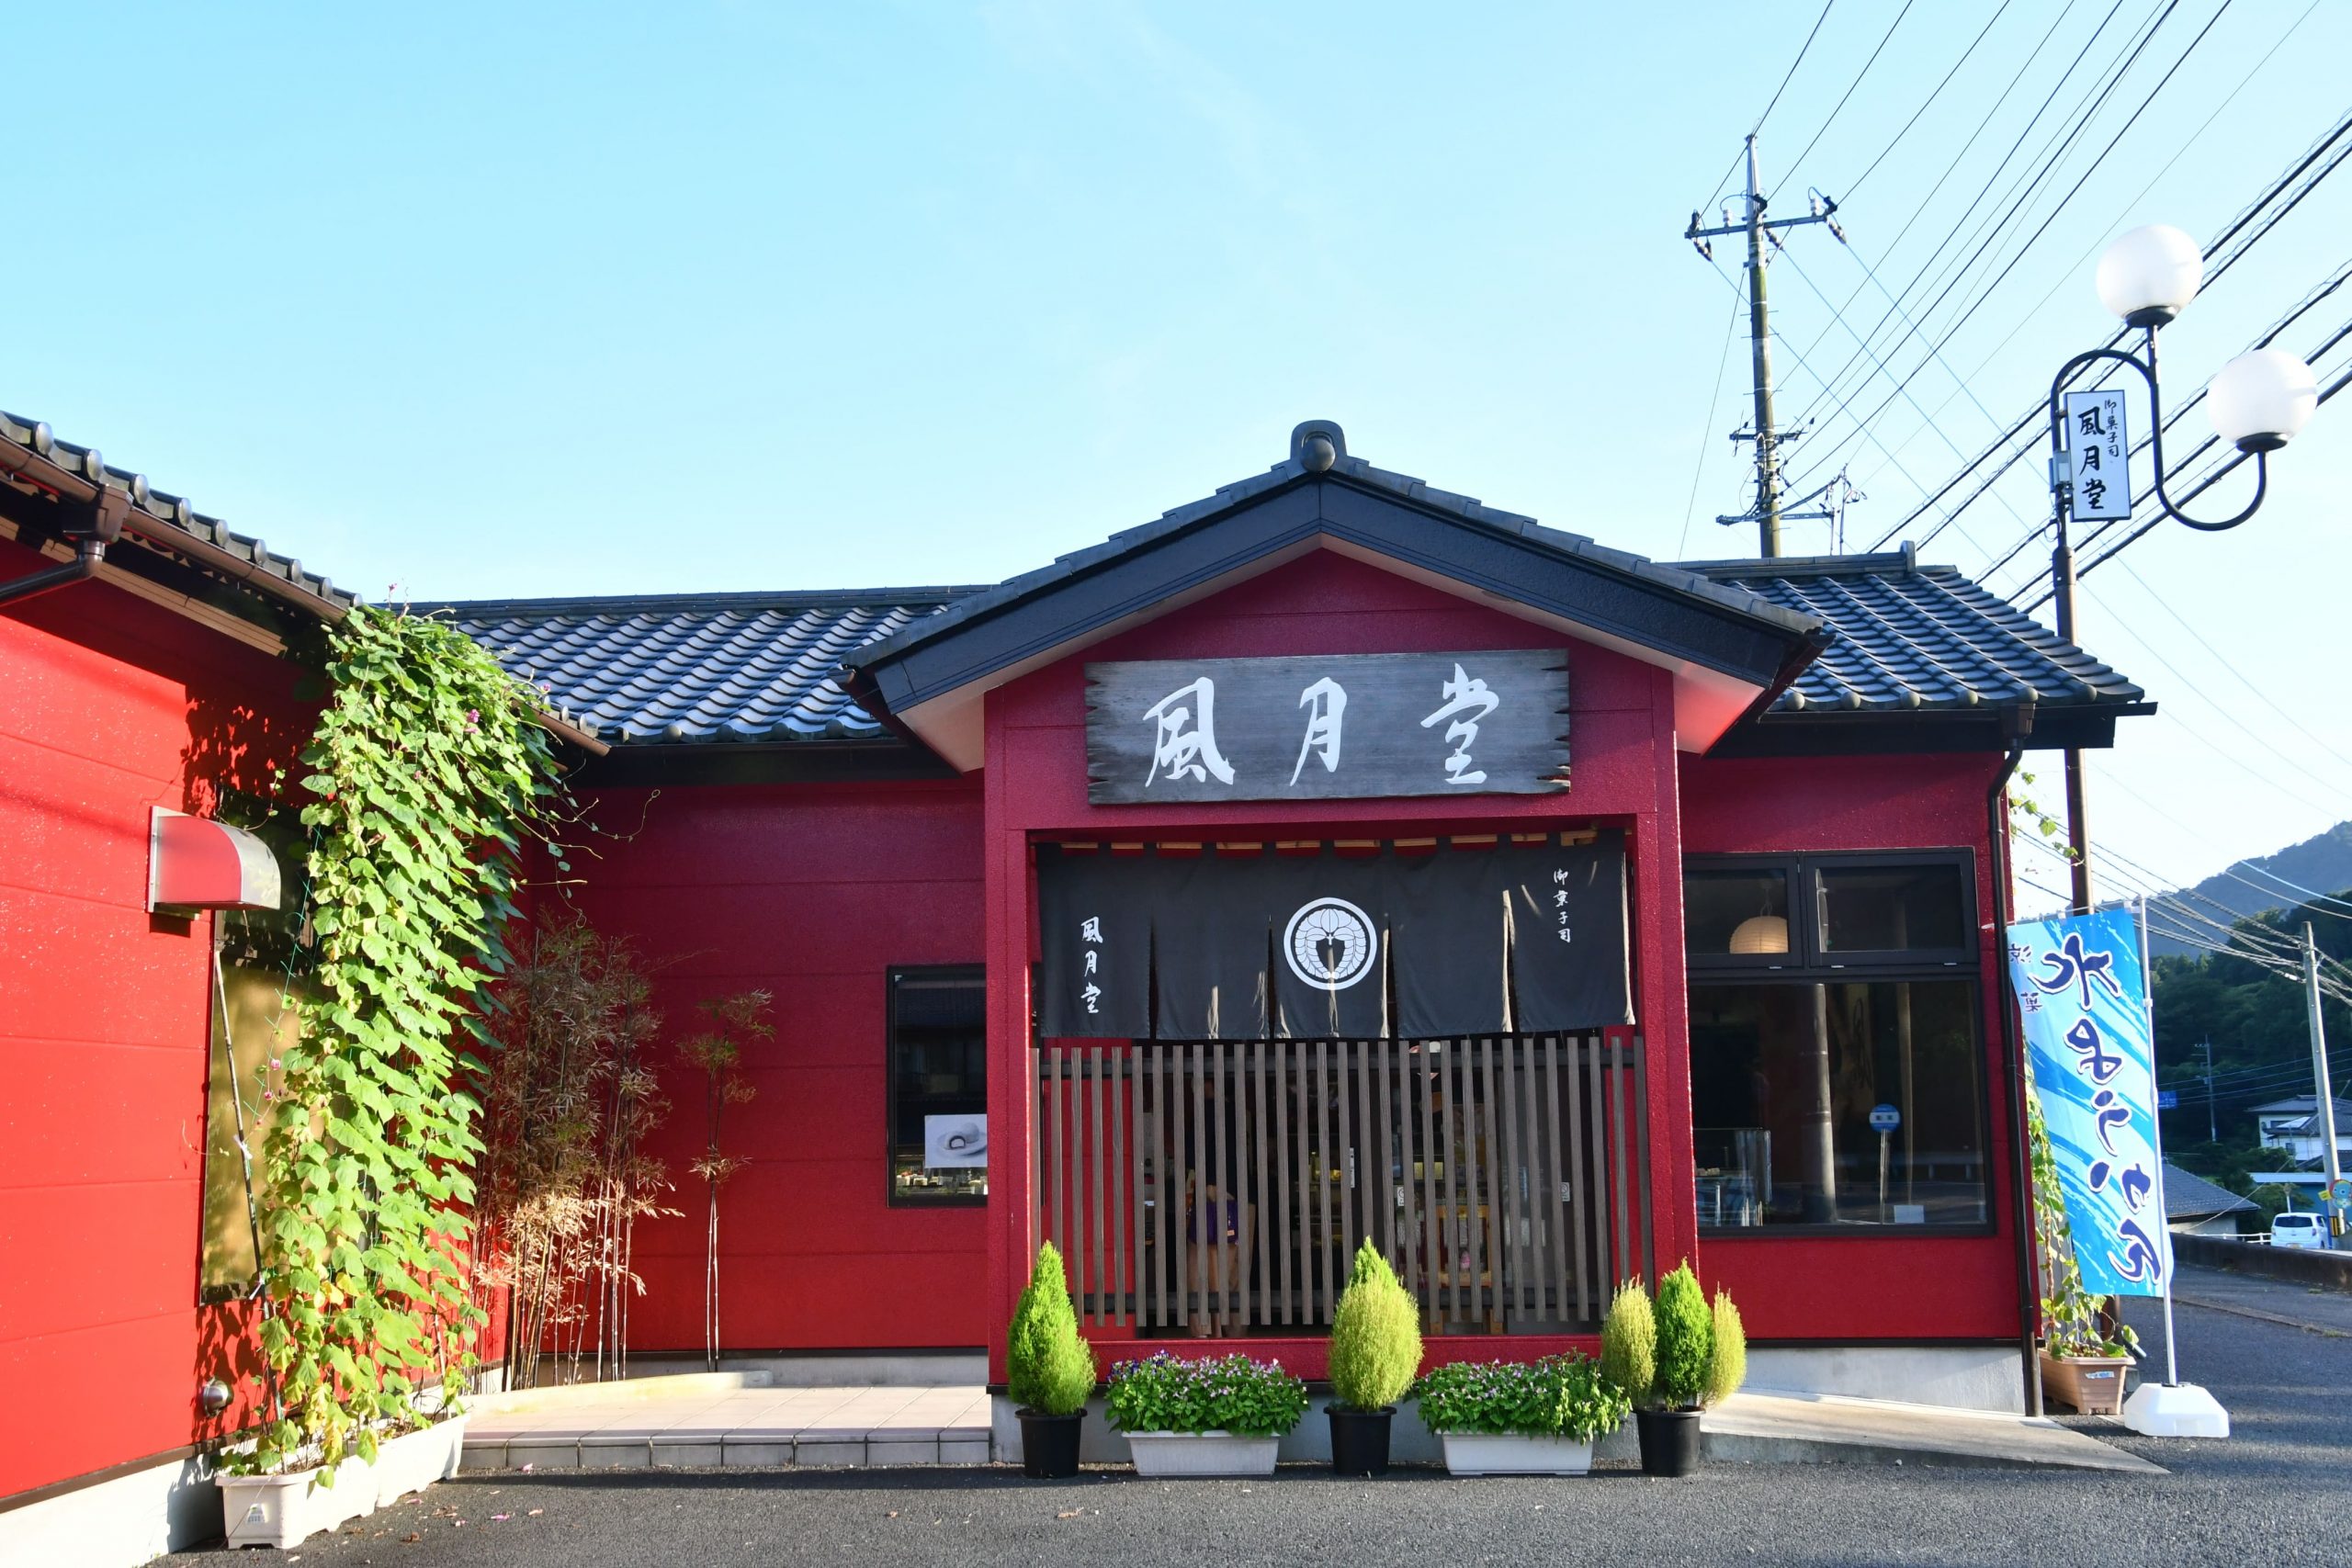 「和菓子の魅力を広めたい」茨城県の老舗和菓子店「御菓子司風月堂」が70年の時を経て法人化